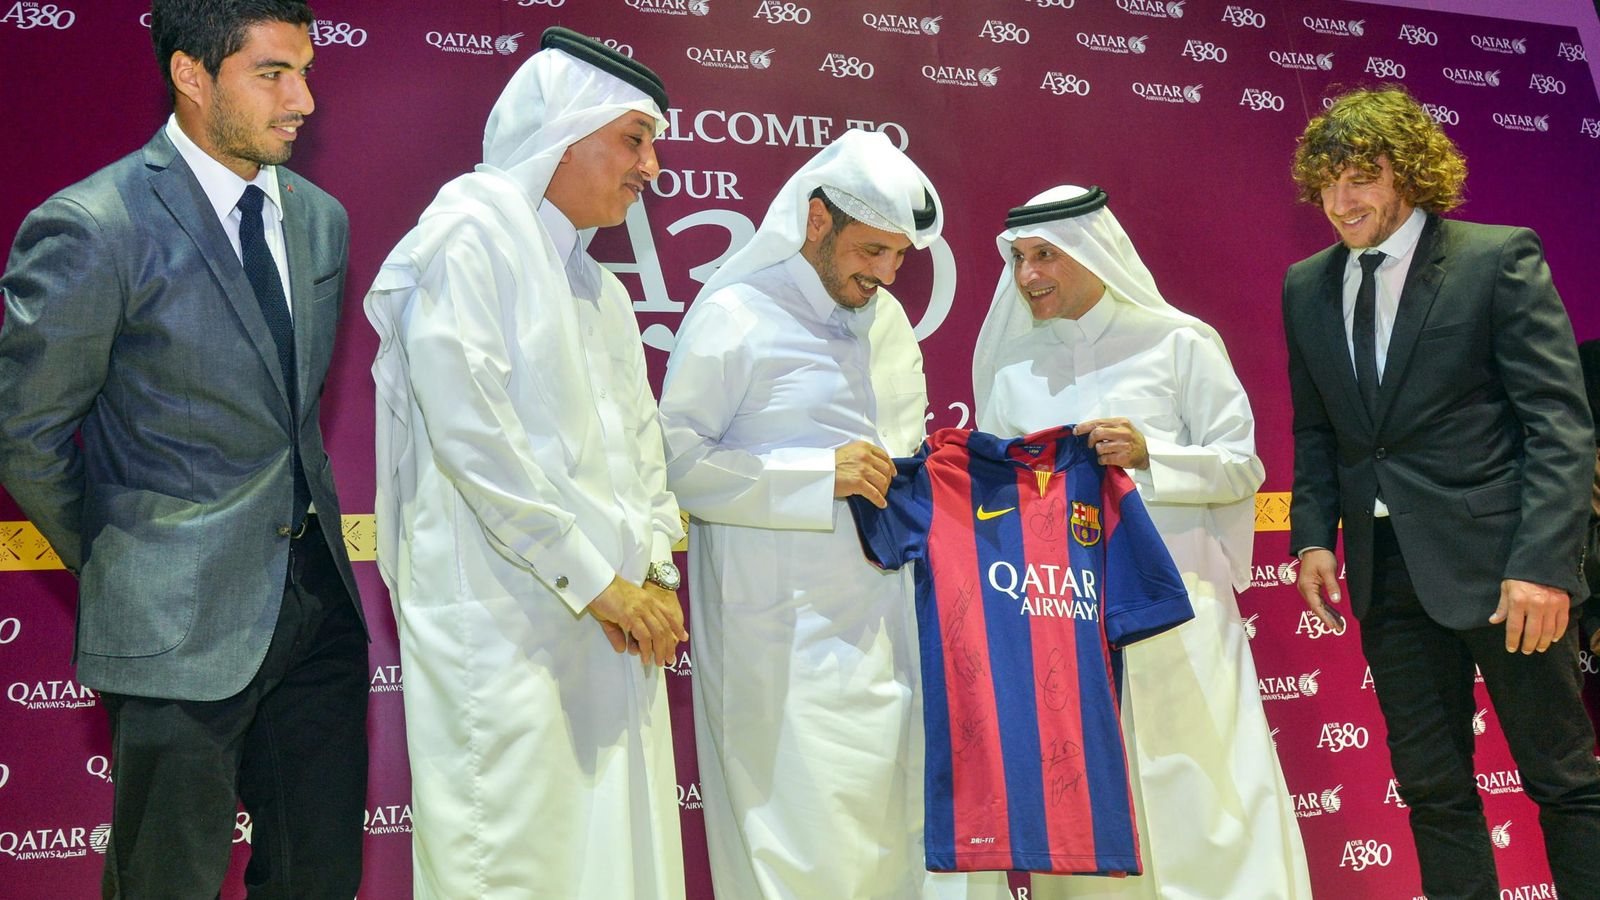 Foto: Acto del FC Barcelona con Qatar Airways, patrocinador del club catalán. (EFE)